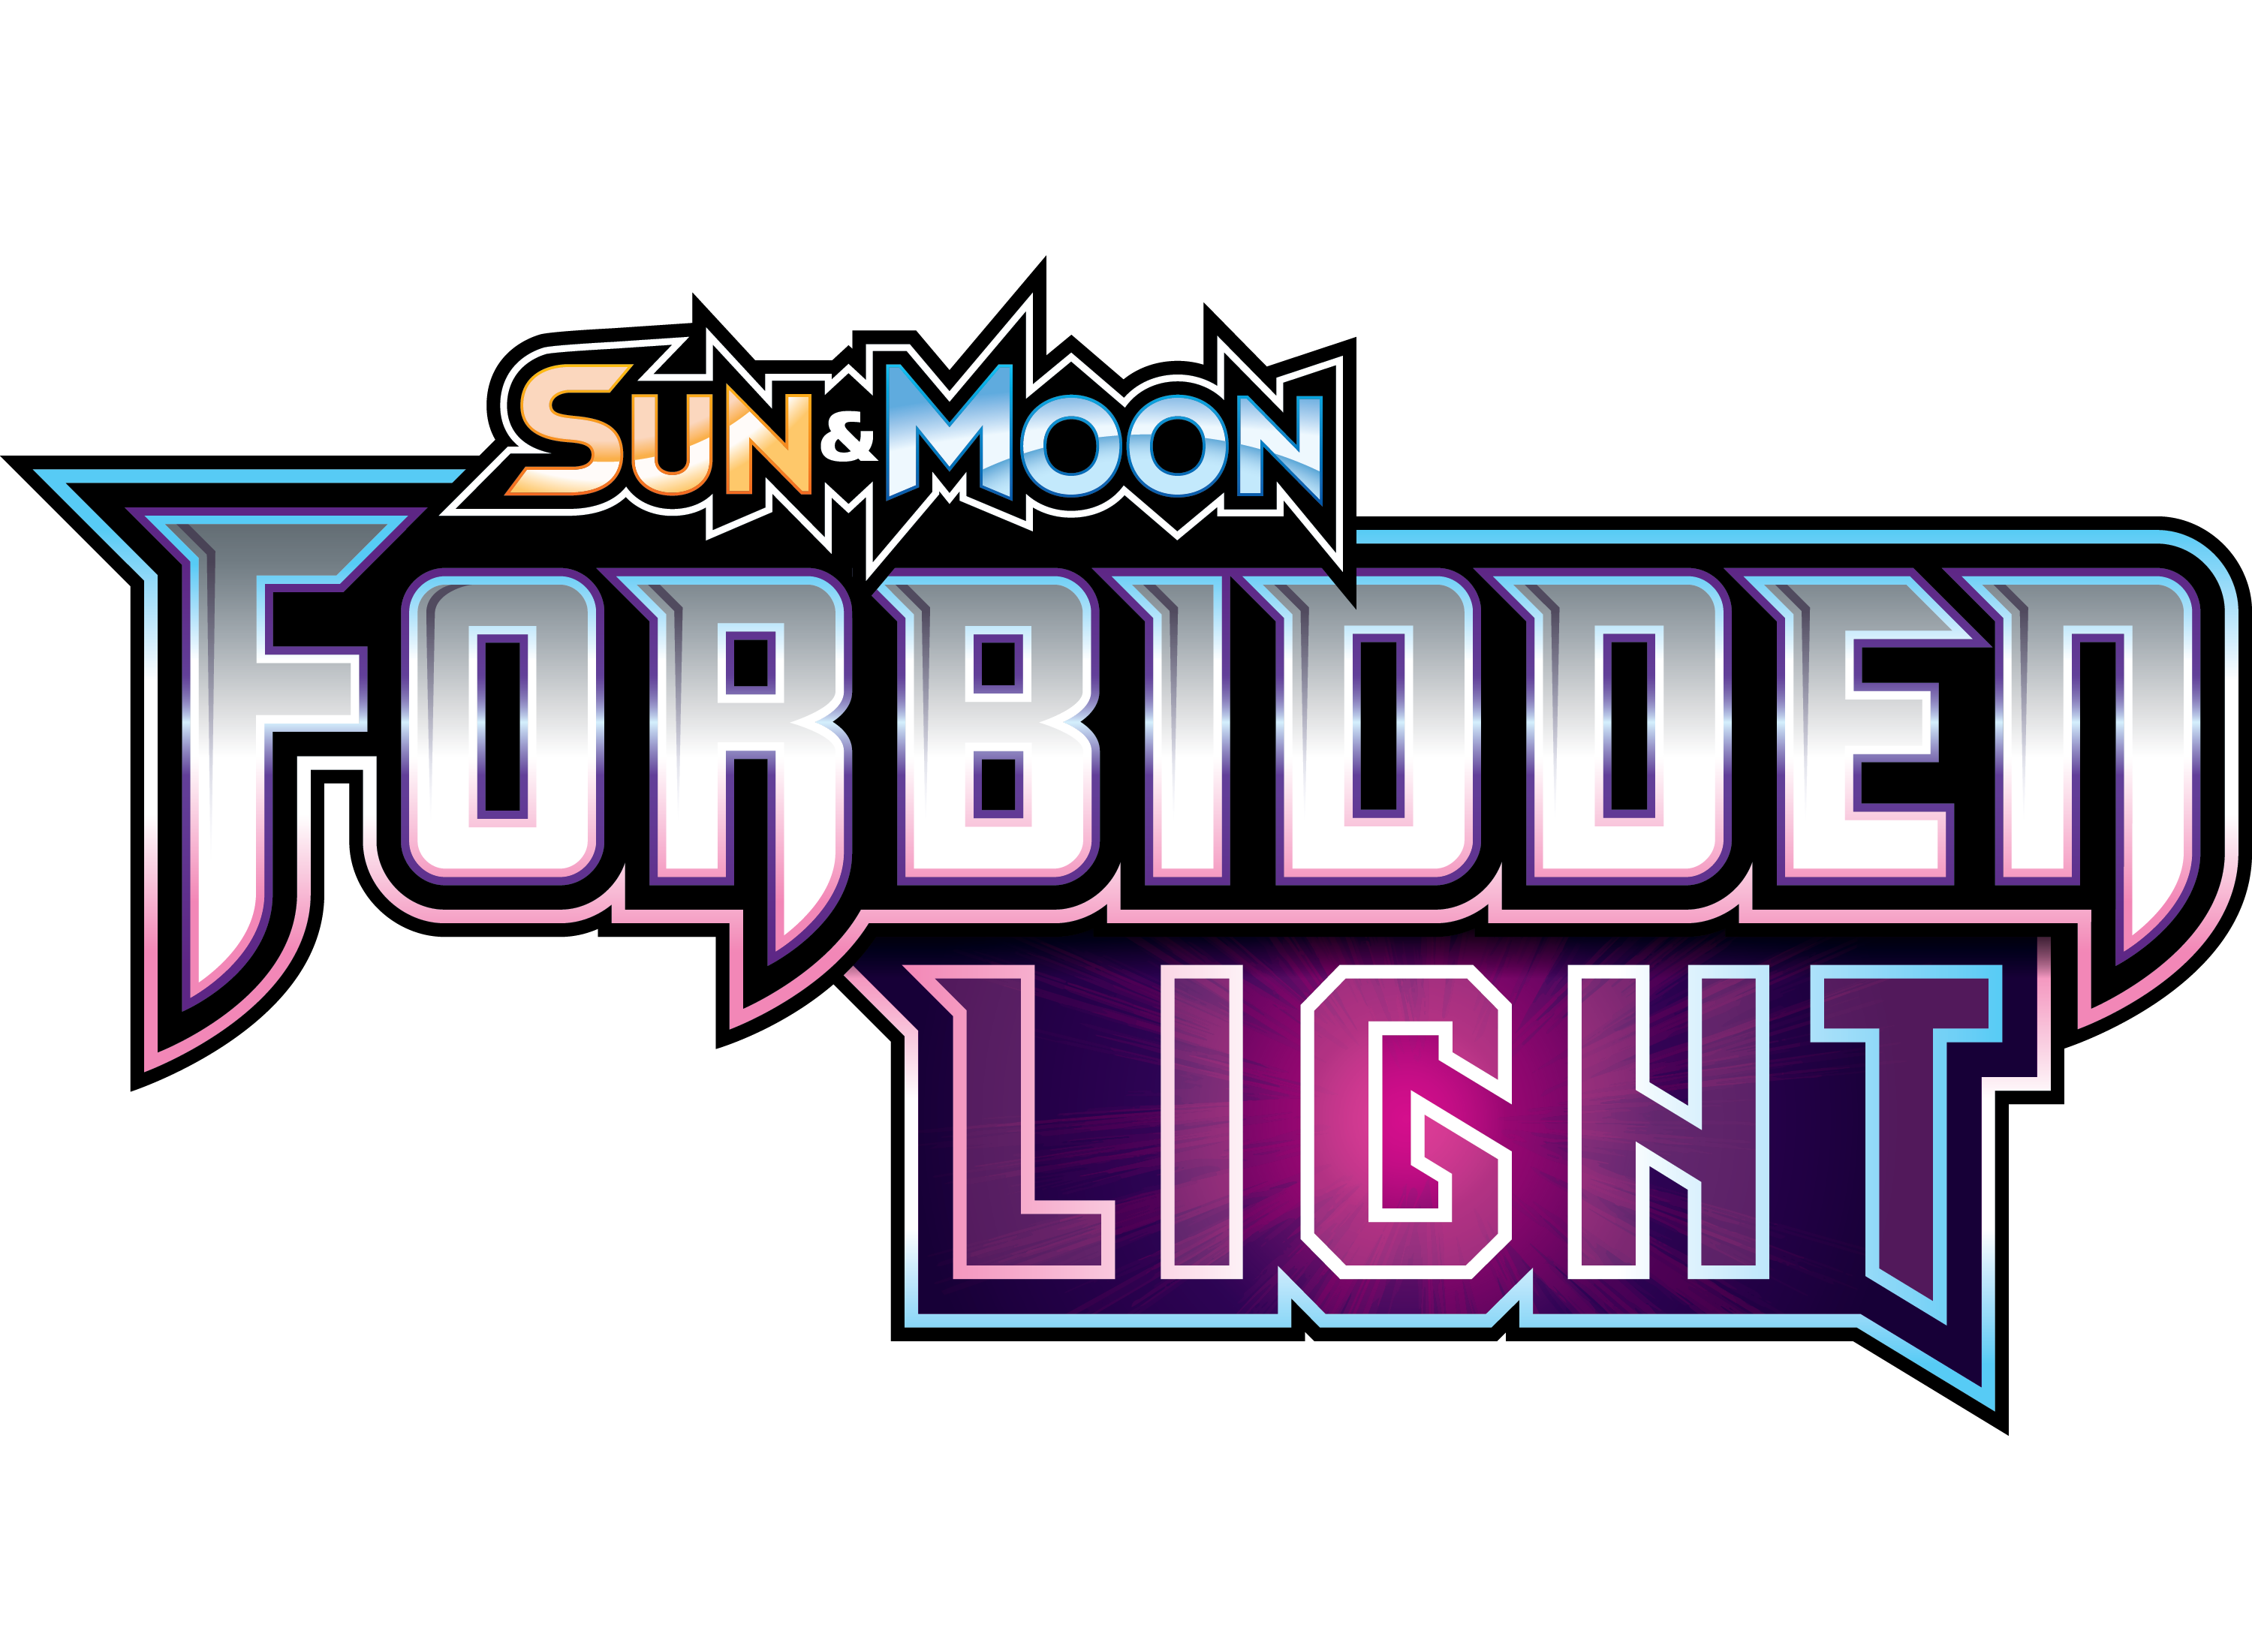 Palkia GX - Sun & Moon: Forbidden Light - Pokemon